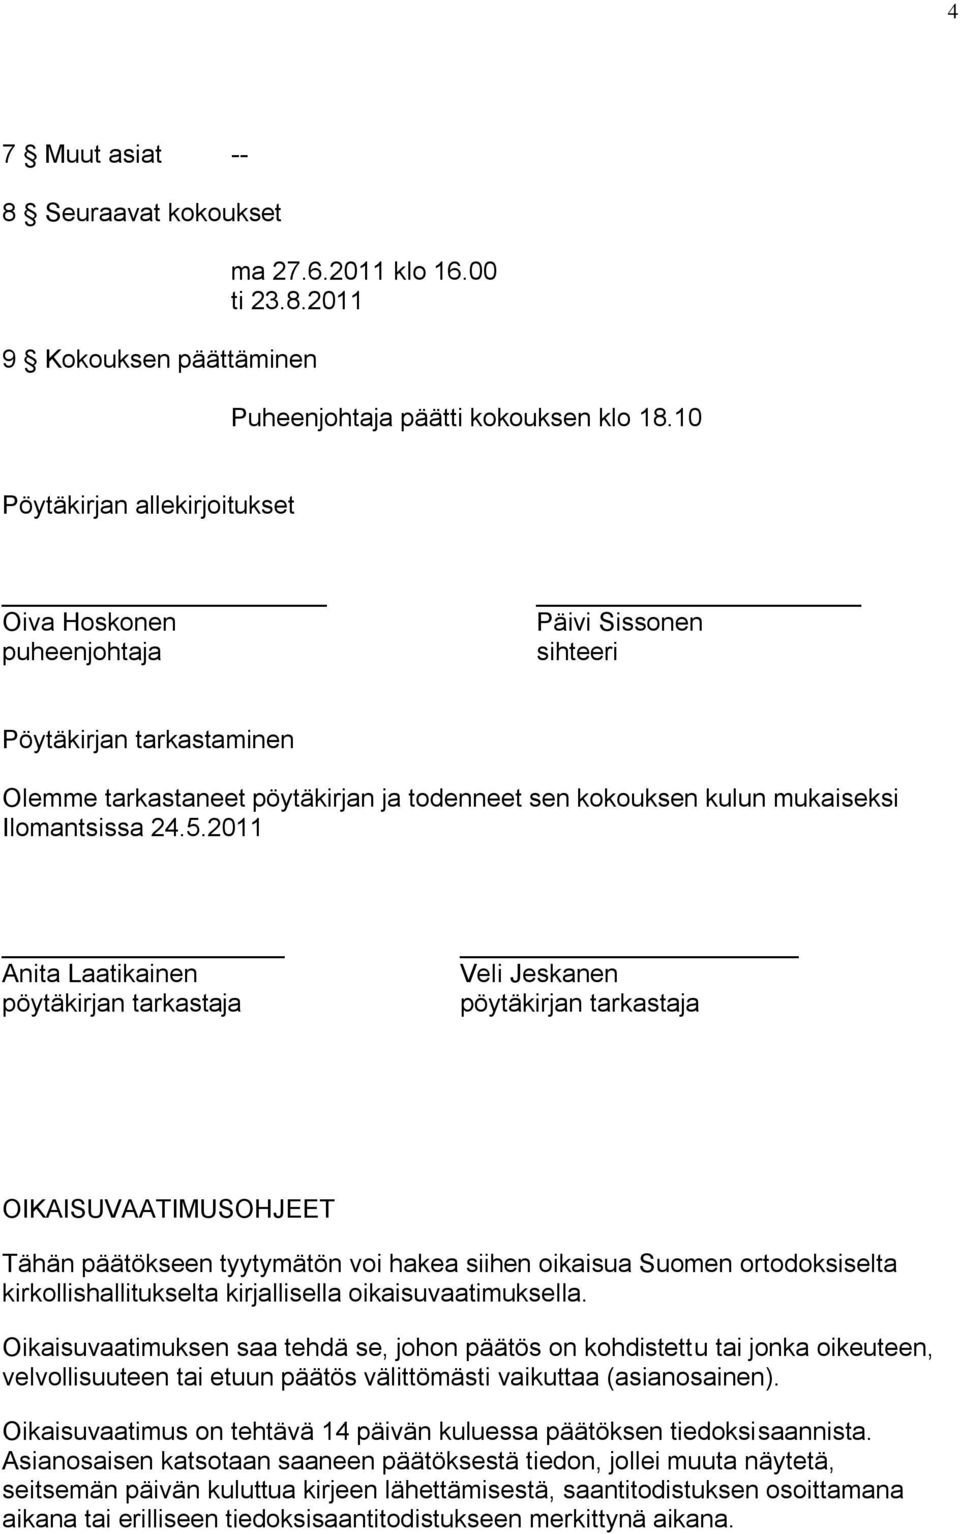 24.5.2011 Anita Laatikainen pöytäkirjan tarkastaja Veli Jeskanen pöytäkirjan tarkastaja OIKAISUVAATIMUSOHJEET Tähän päätökseen tyytymätön voi hakea siihen oikaisua Suomen ortodoksiselta